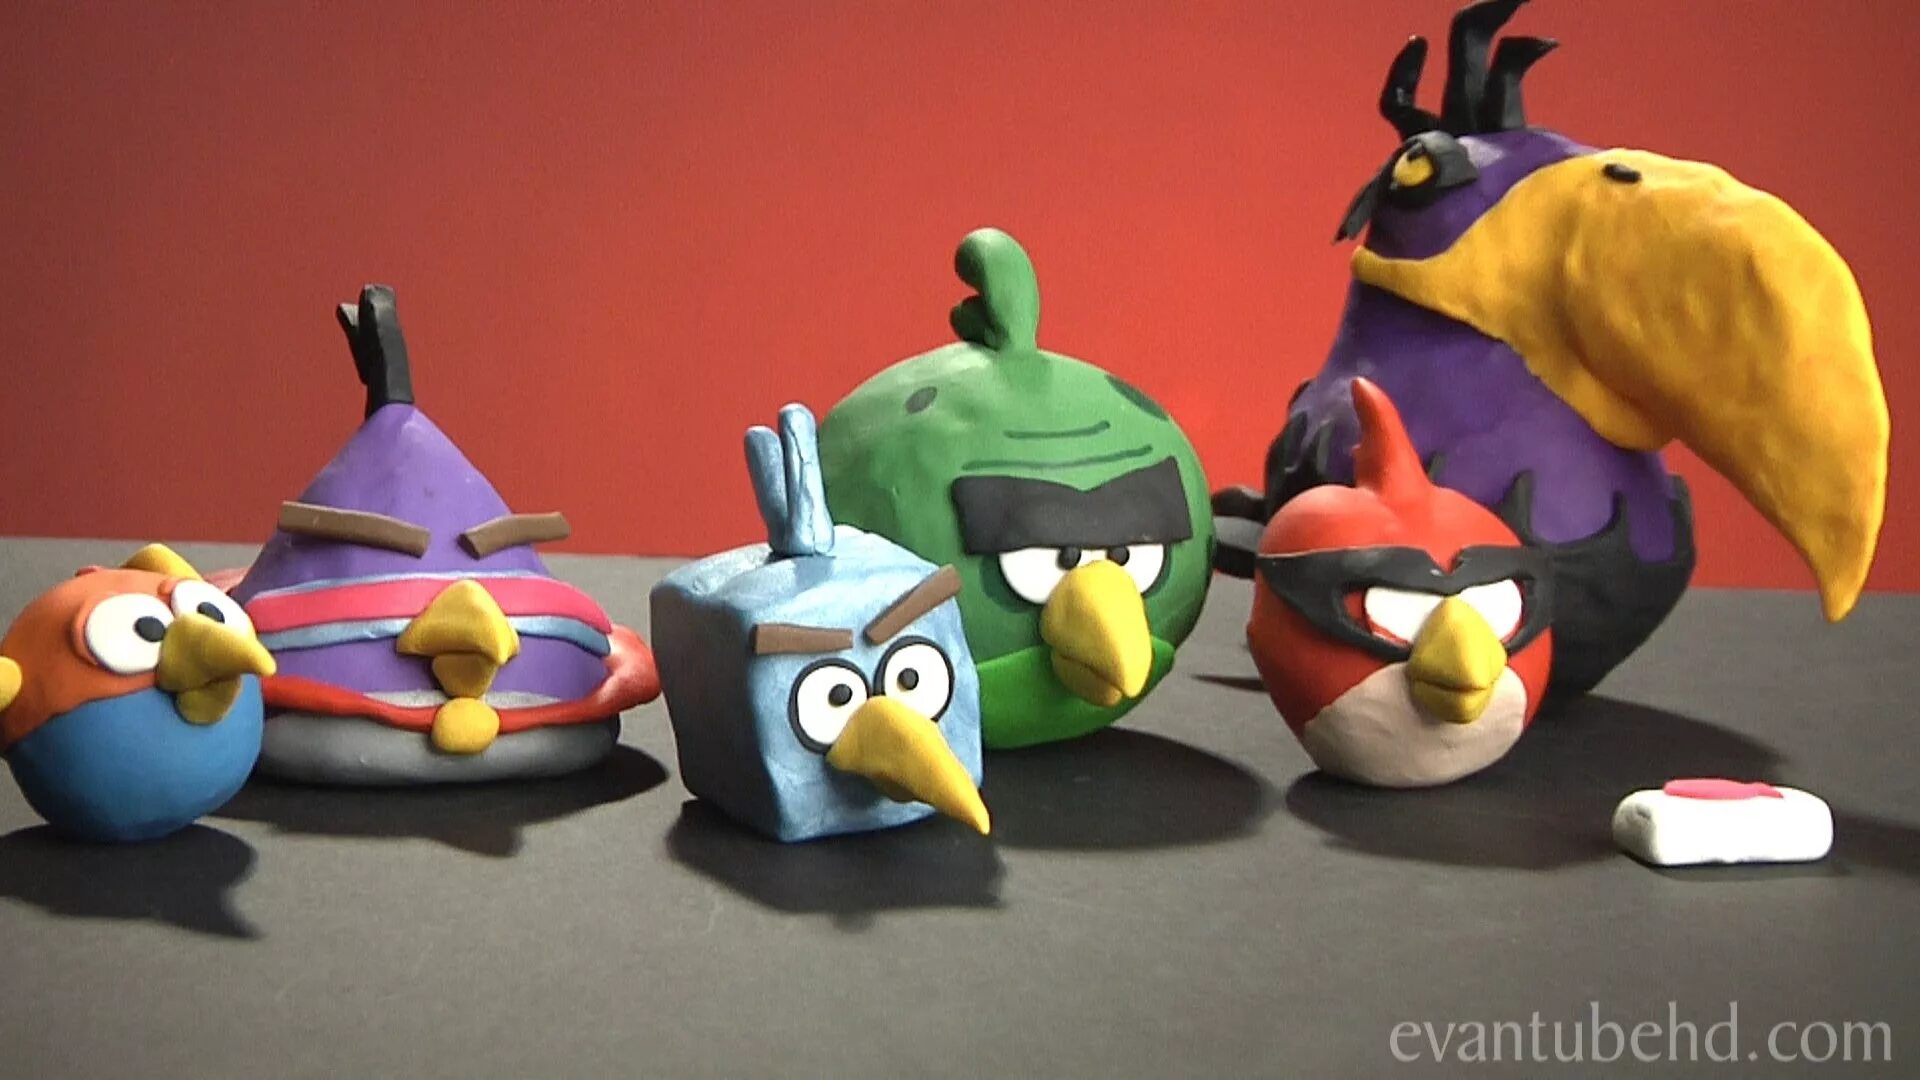 Angry Birds Space Plush Toys. Энгри бердз пластилин. Angry Birds Mighty Eagle Plush. Птички Энгри бердз пластилин.